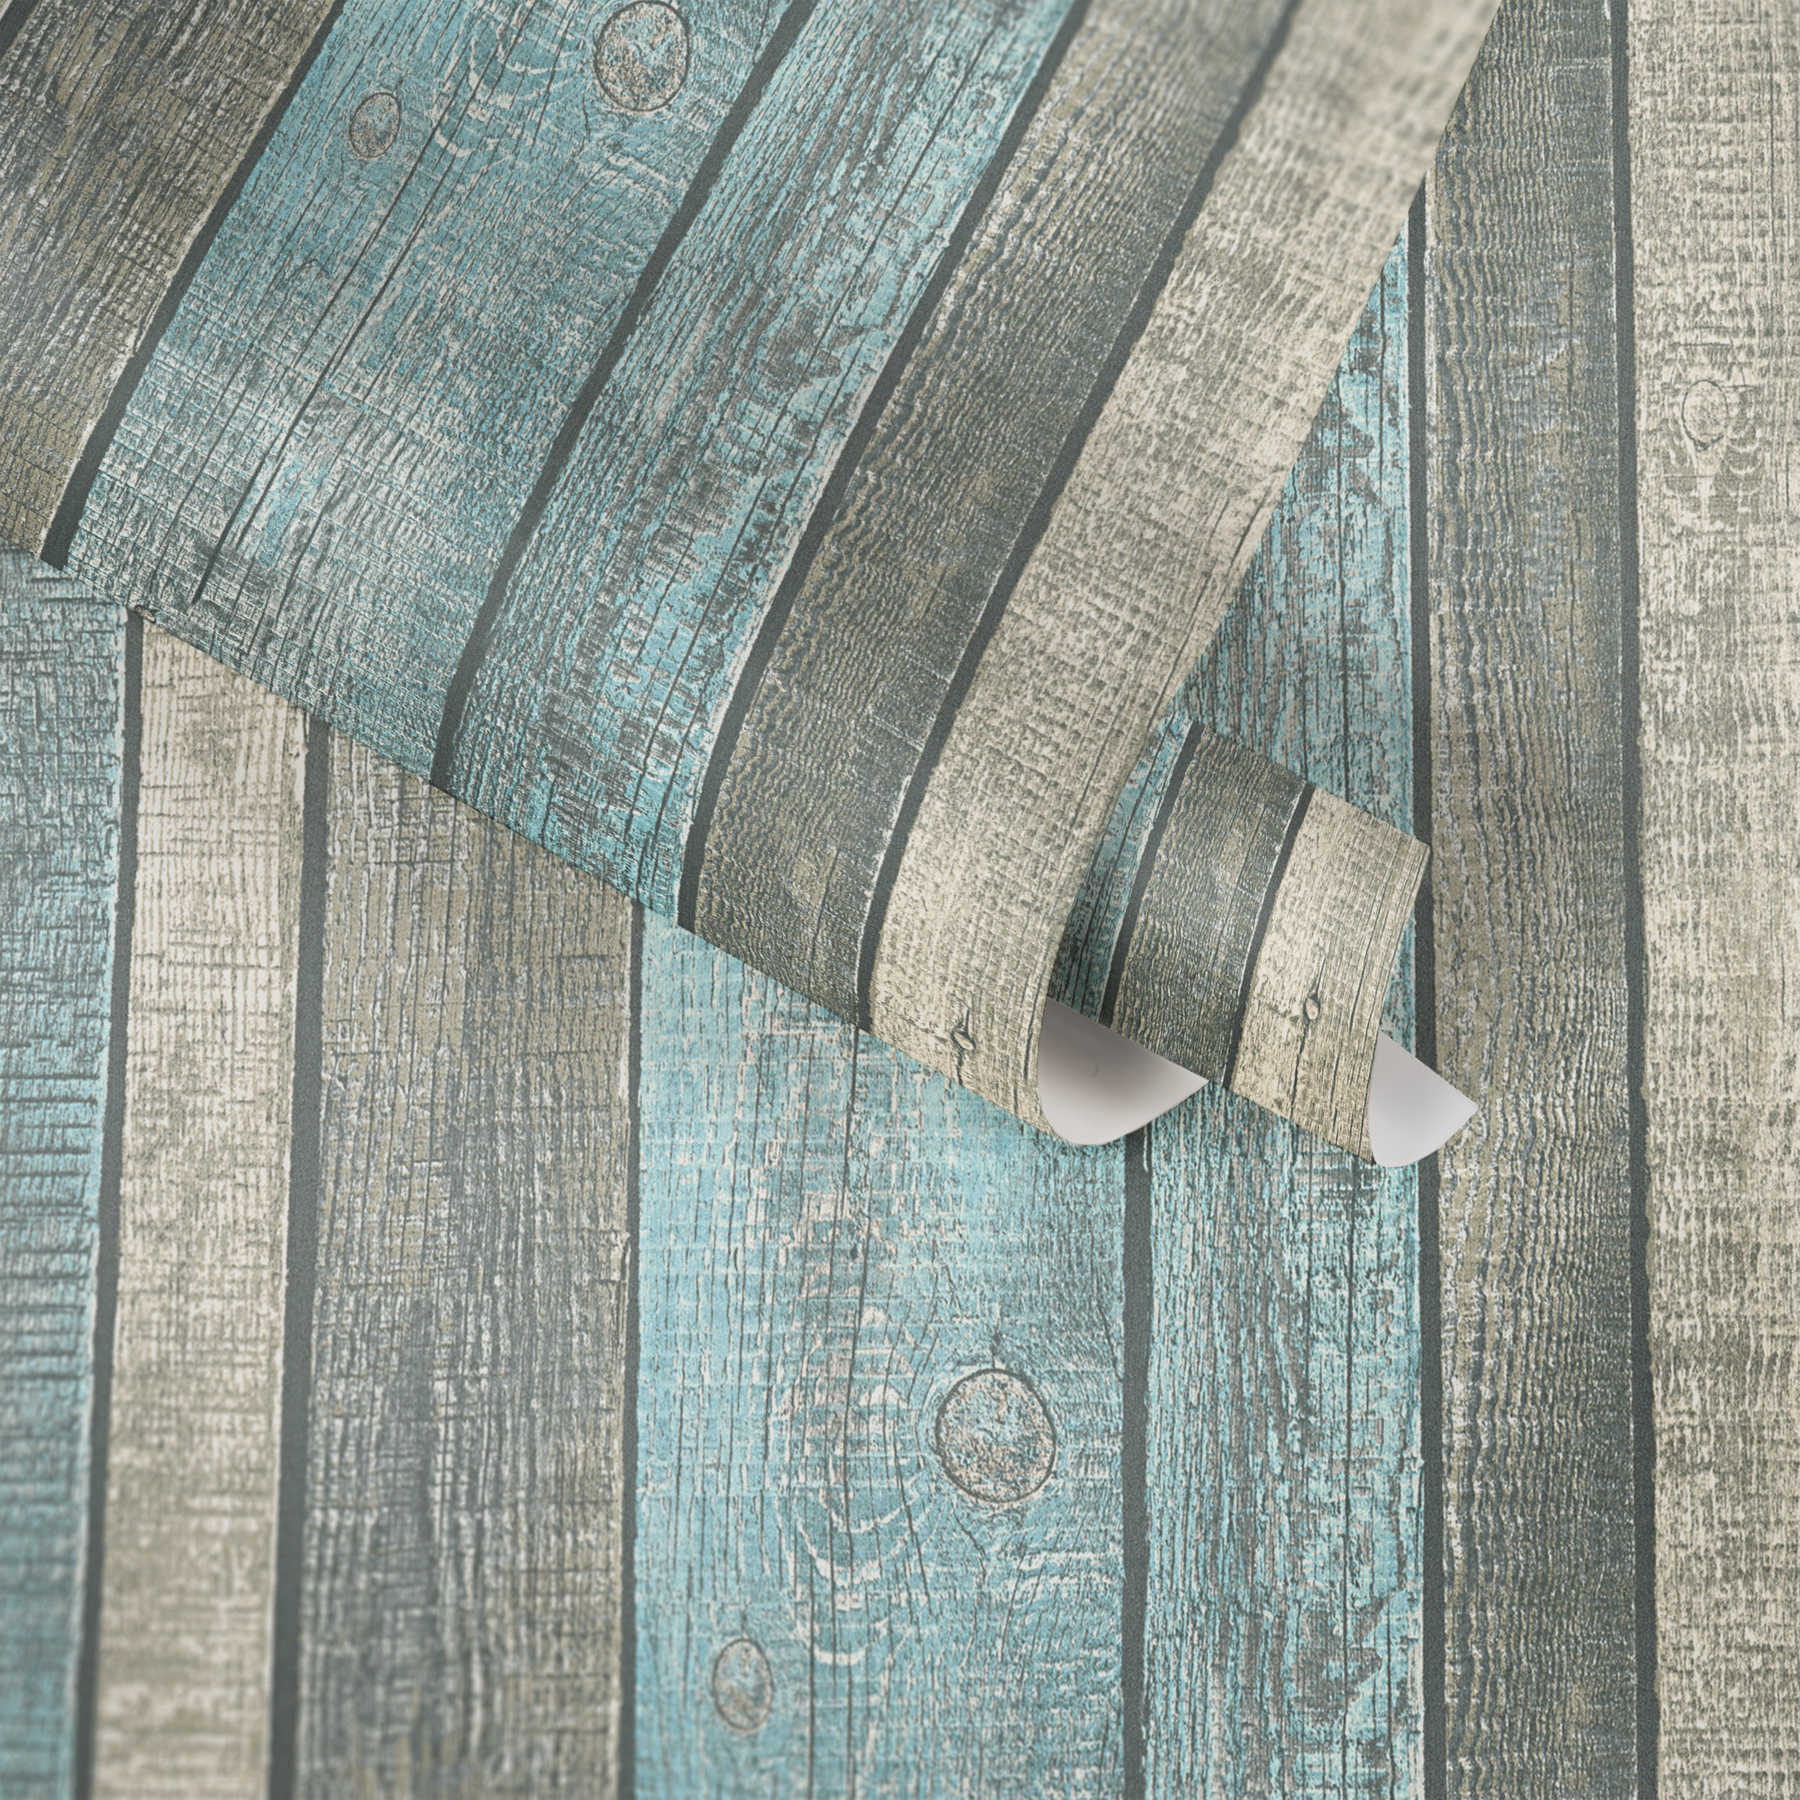             Houtlook behang met planken en rustieke korrel - blauw, grijs, crème
        